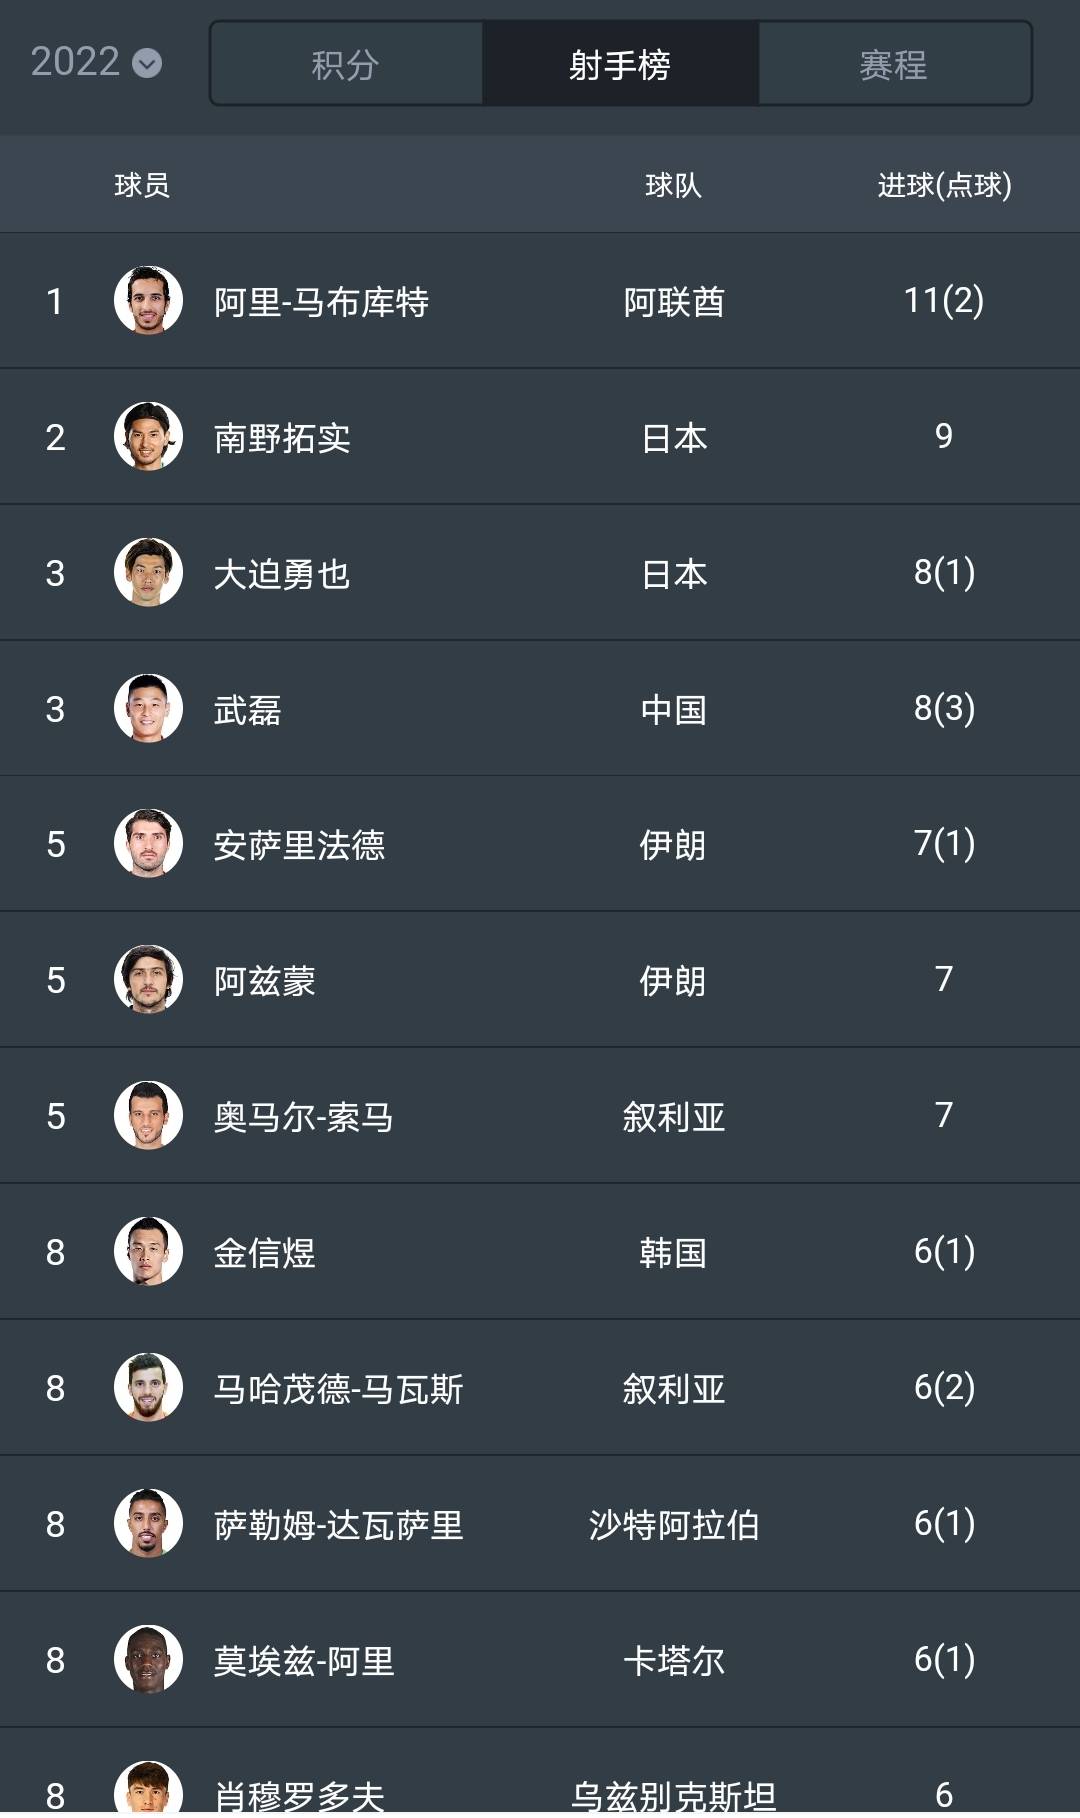 武磊高居榜首亚足联评月度最佳球员武磊的票数呈压倒性优势